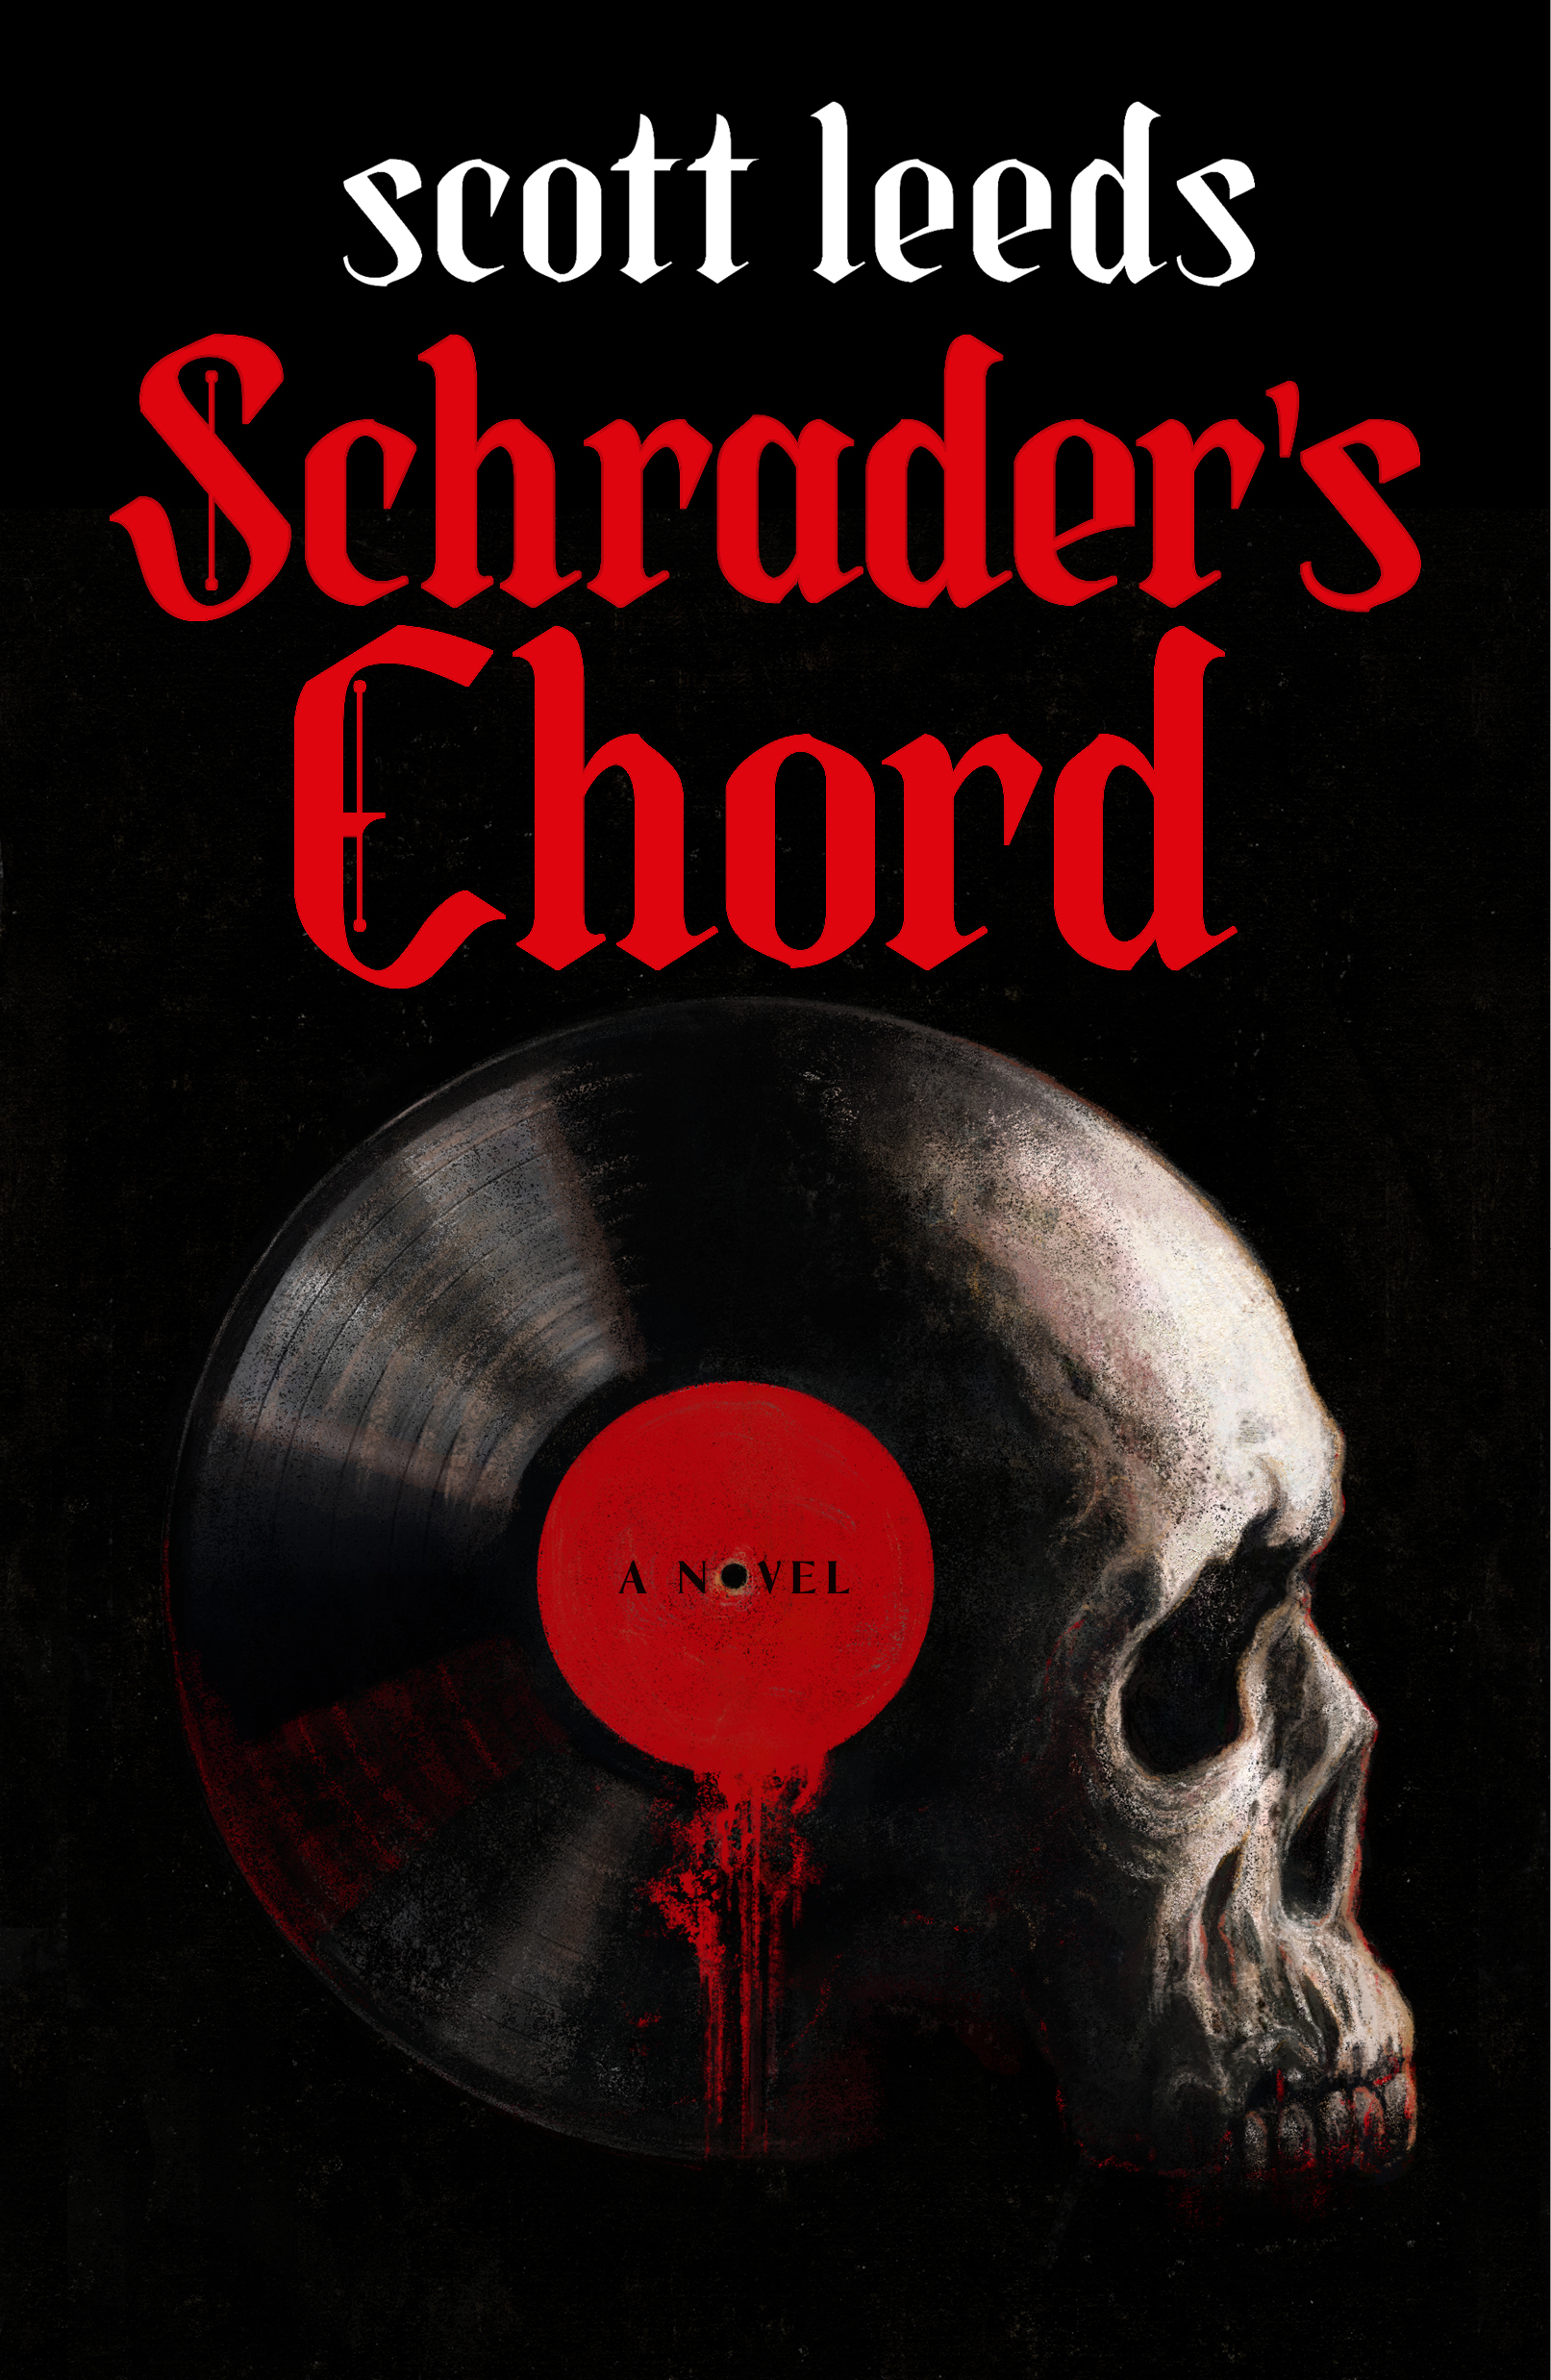 Schrader's Chord - 185